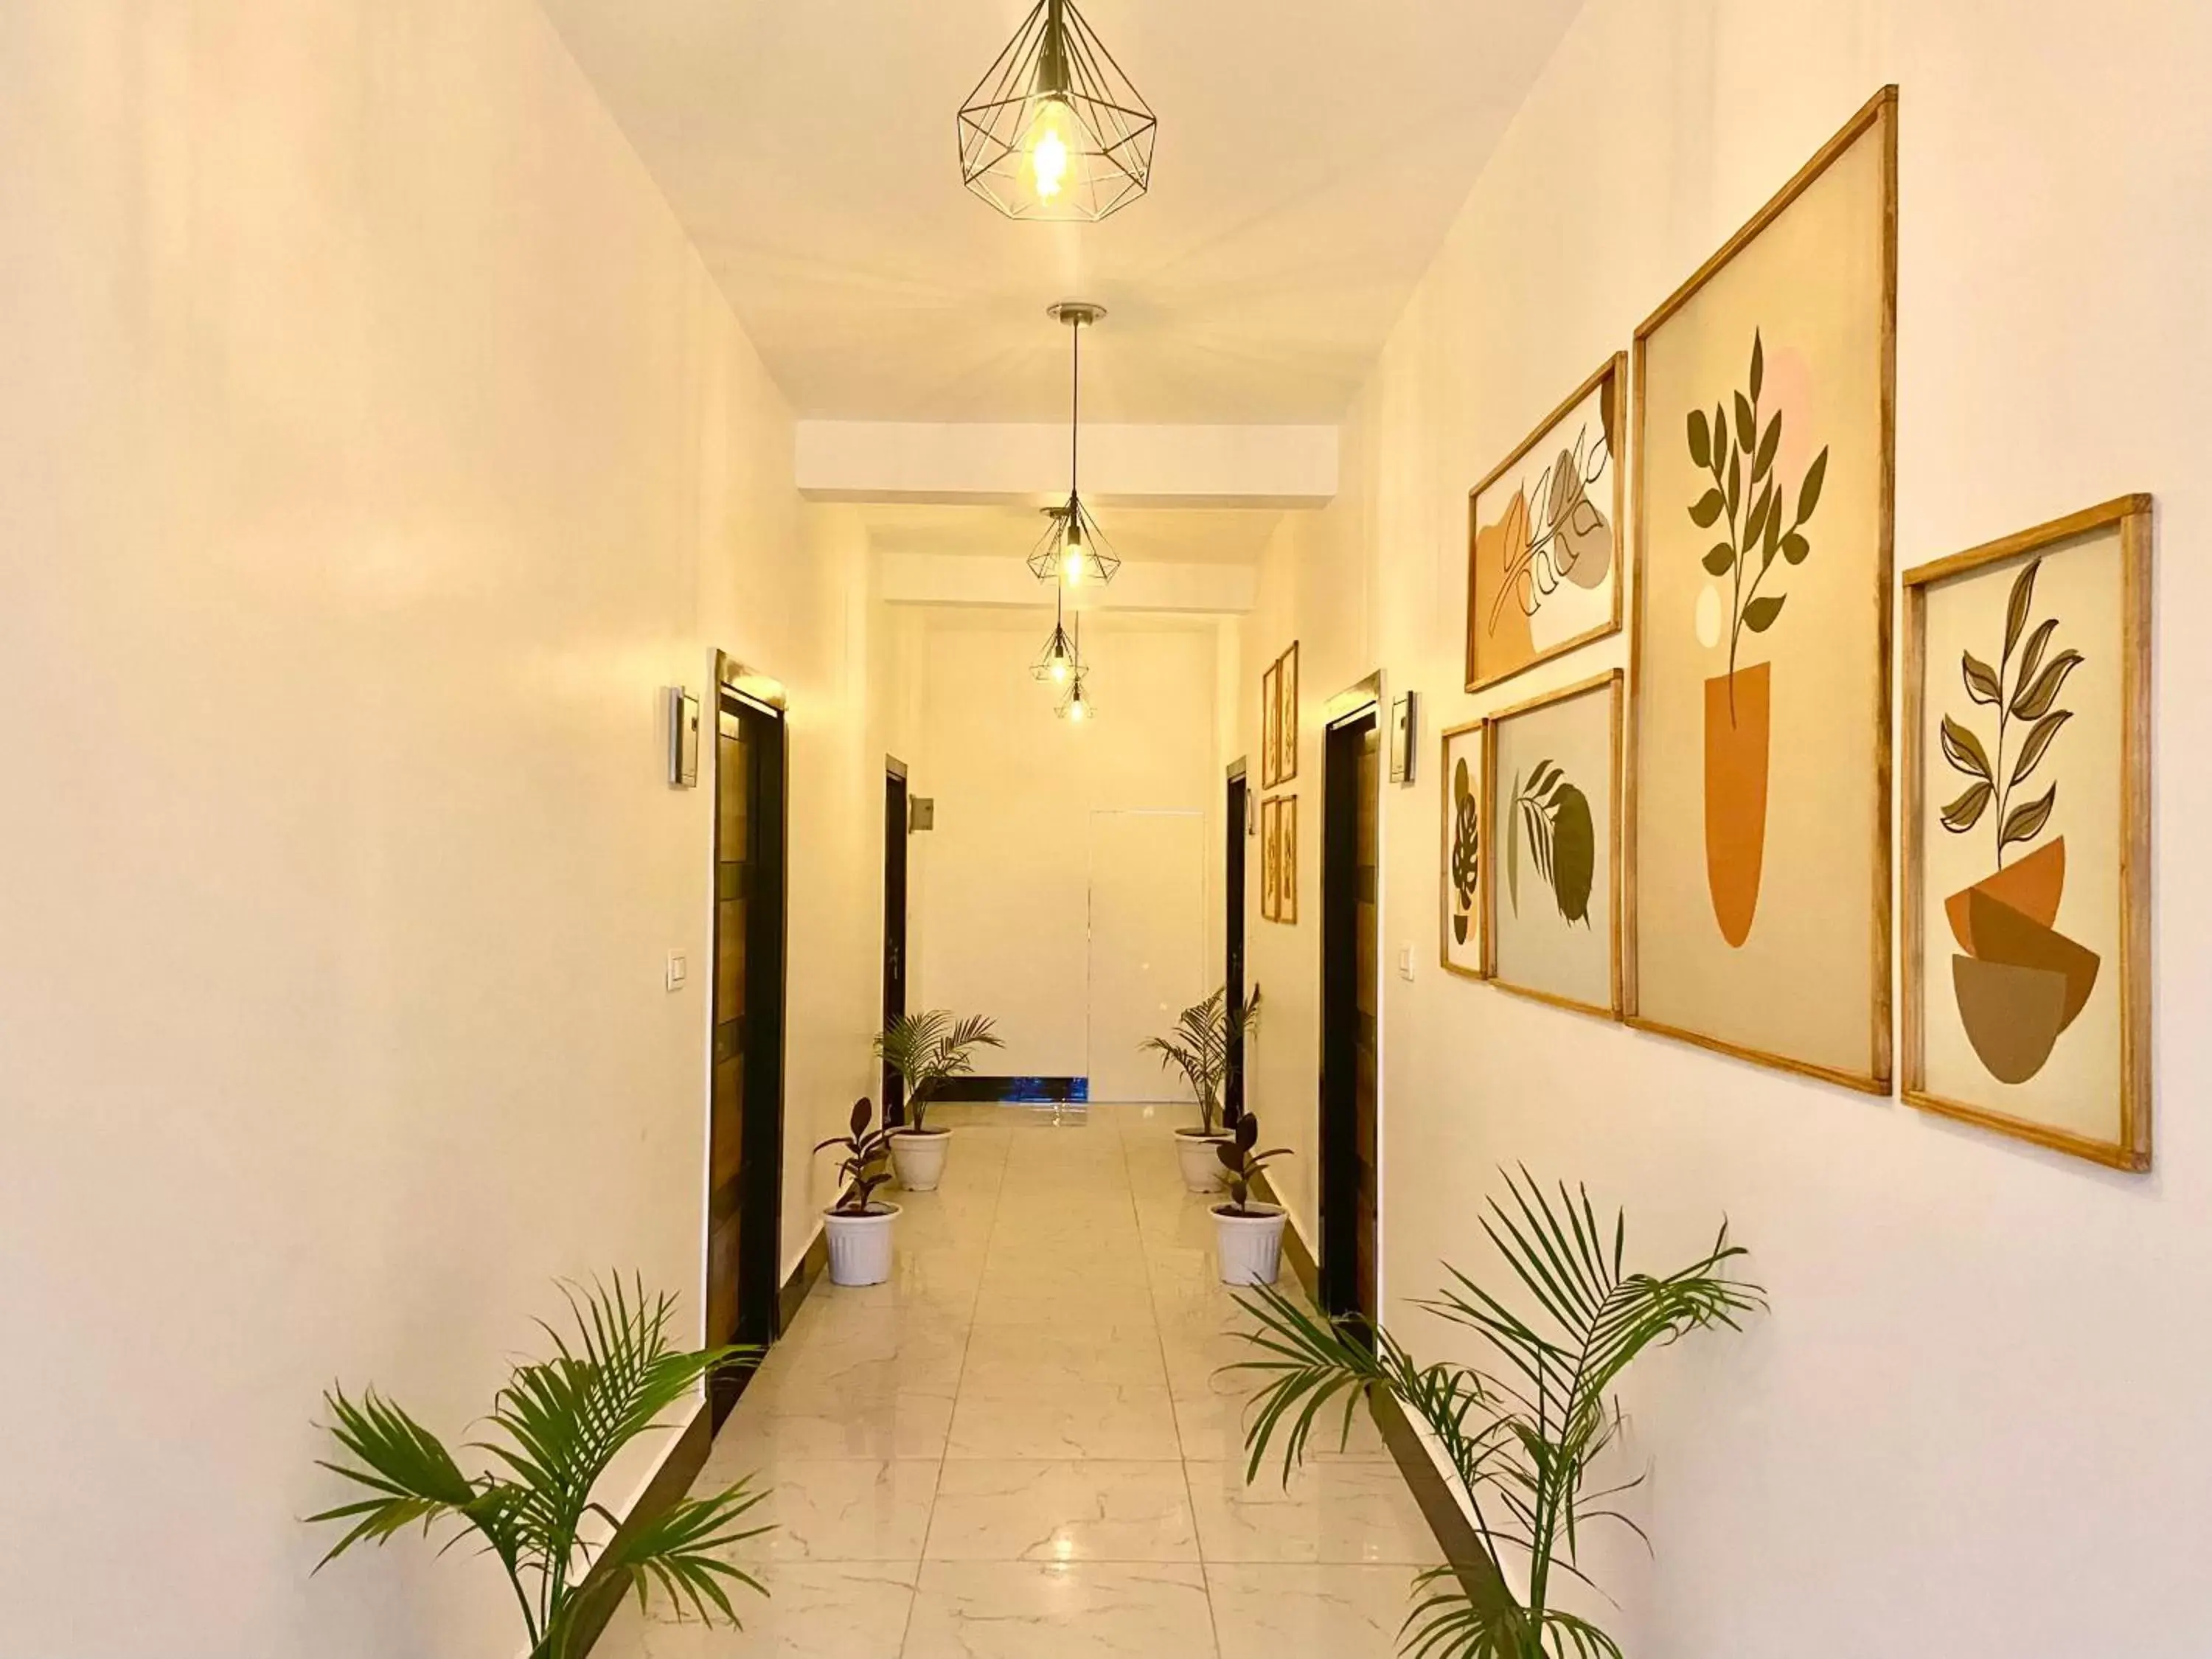 Lobby or reception in Hotel Wraveler Inn Rishikesh